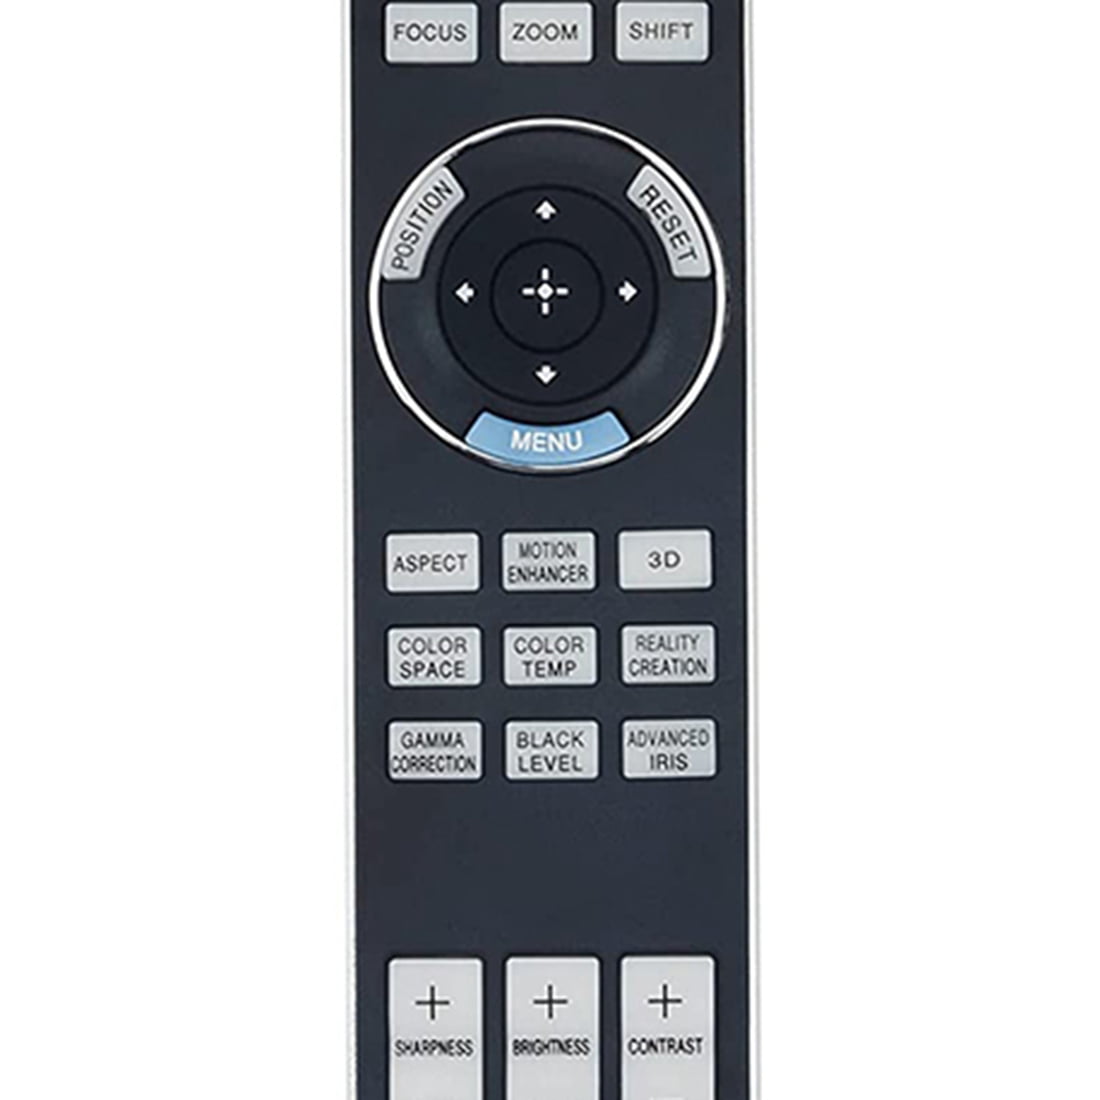 RM-PJ22 Replacement Remote Control fit for Sony Video Projector VPL-HW50ES VPL-HW55ES VPL-VW1000ES sub Remote Commander RM-PJ25 VPL-HW40ES 